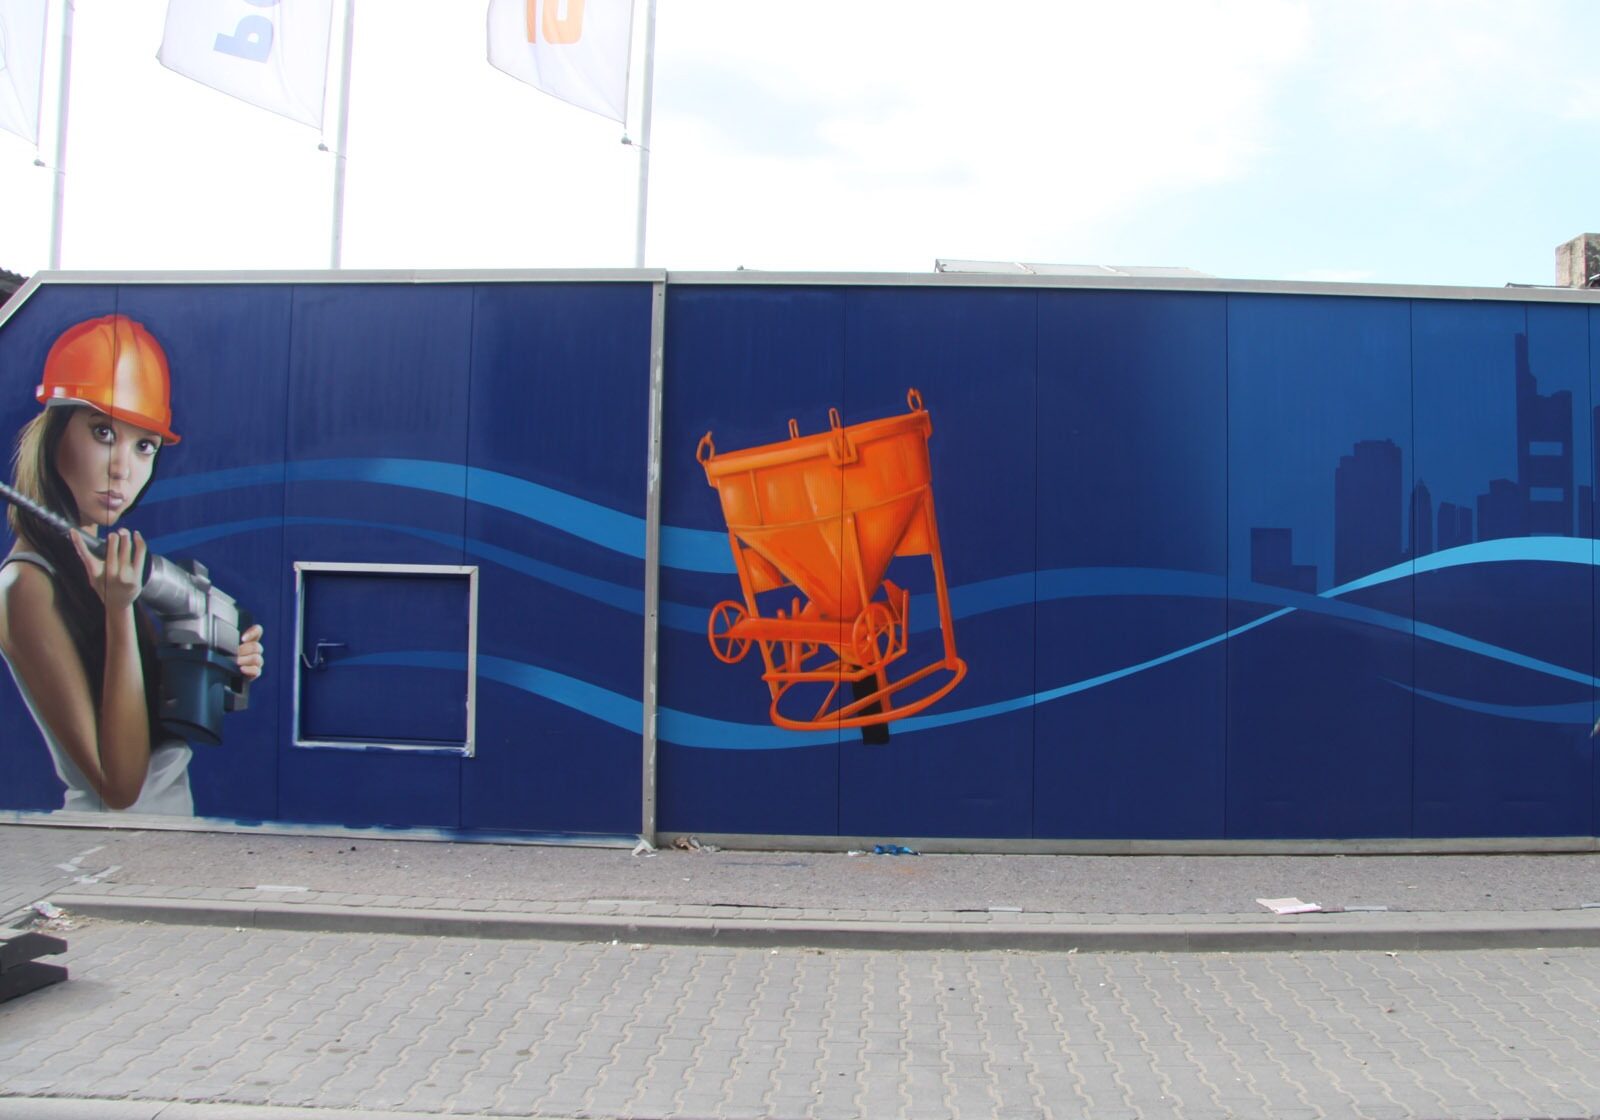 graffitikuenstler-graffitiauftrag-artmos4-rhein-main-baumaschinen-2013-bohrer-menschen-fotorealistisch-blau-orange-aussen